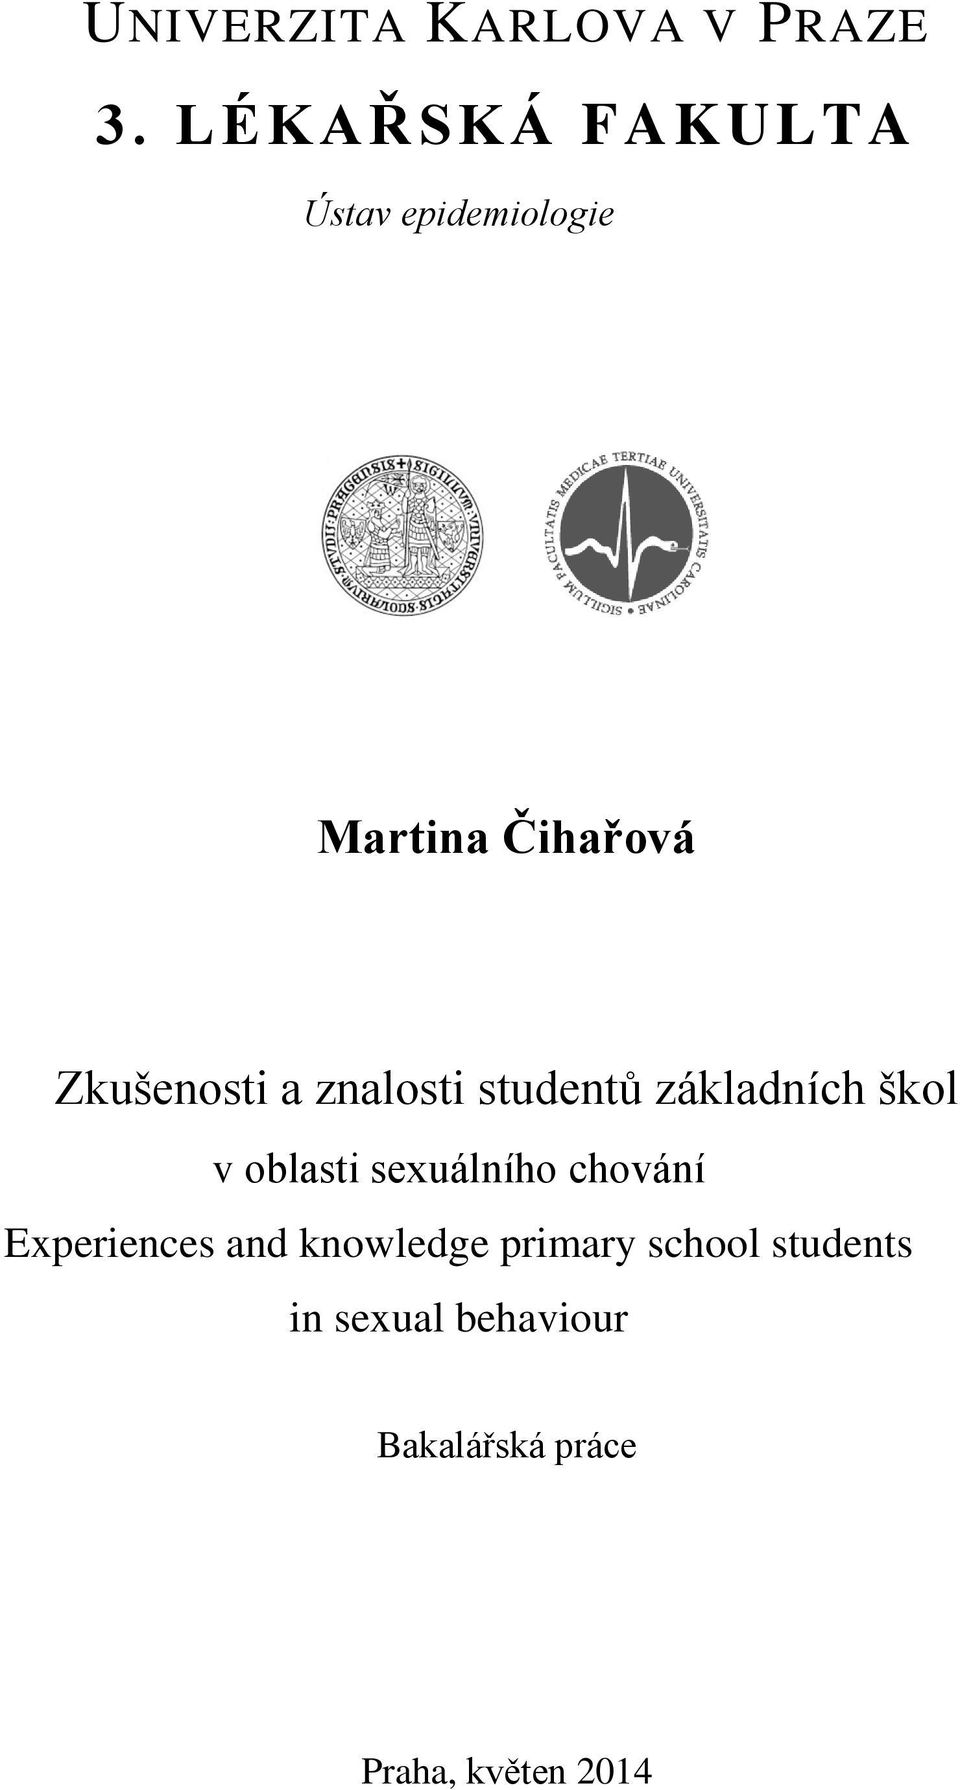 znalosti studentů základních škol v oblasti sexuálního chování